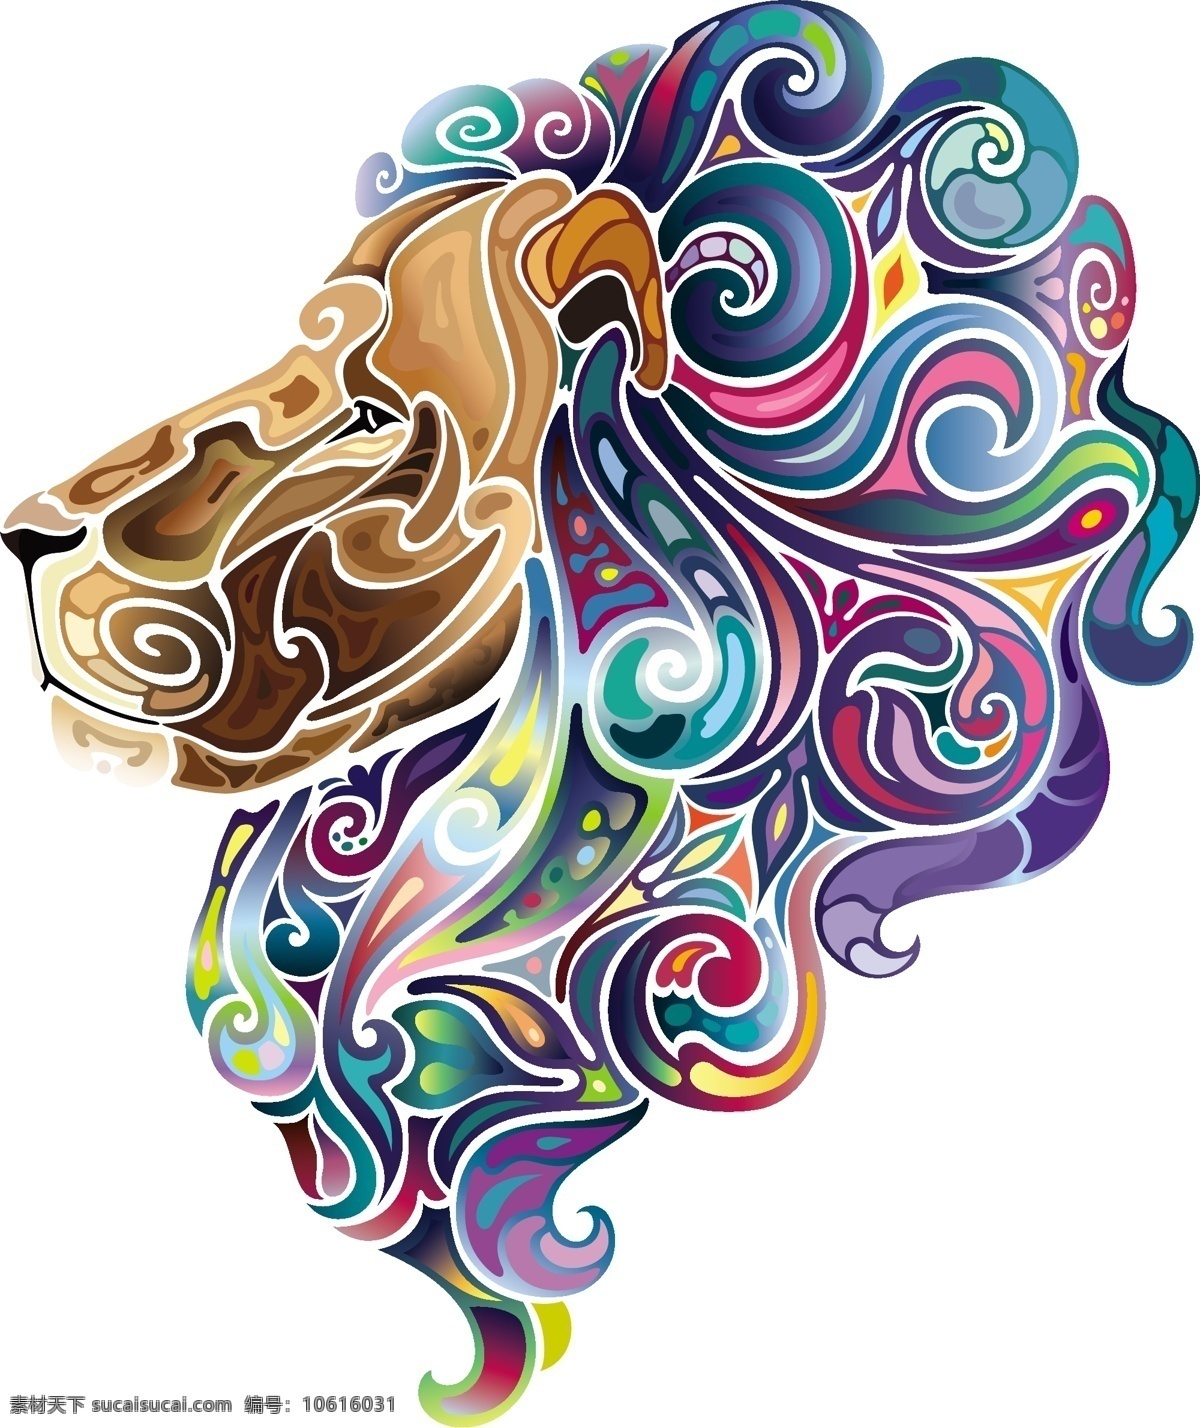 狮头 动物 纹身 刺青 彩色 创意设计 花纹 矢量素材 矢量图 图案 炫彩 矢量 v3 炫丽 花纹花边